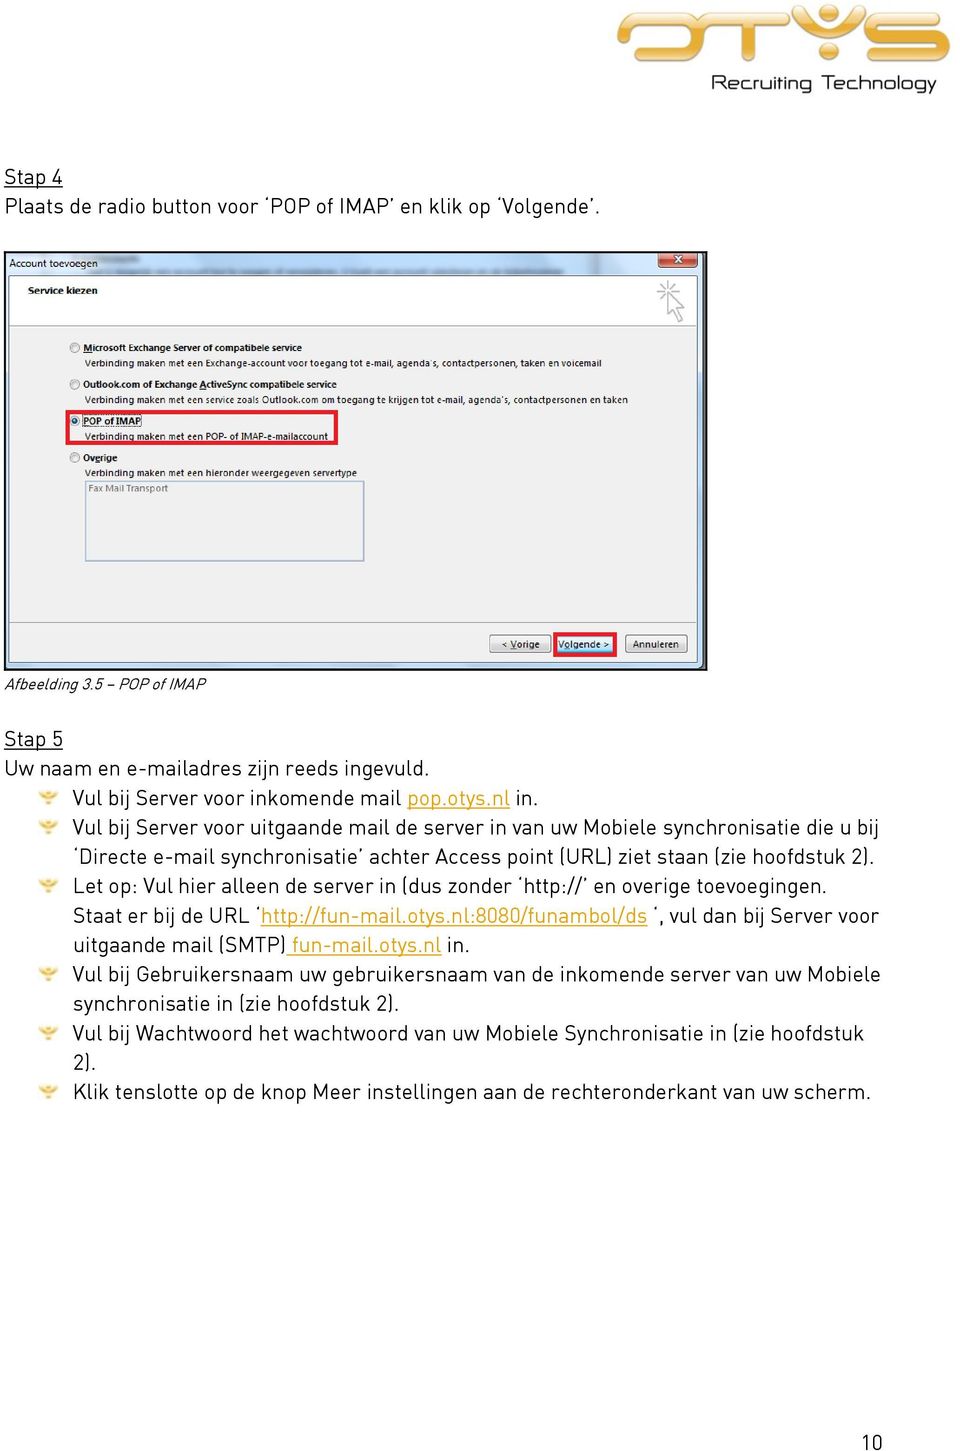 Let op: Vul hier alleen de server in (dus zonder http:// en overige toevoegingen. Staat er bij de URL http://fun-mail.otys.nl:8080/funambol/ds, vul dan bij Server voor uitgaande mail (SMTP) fun-mail.